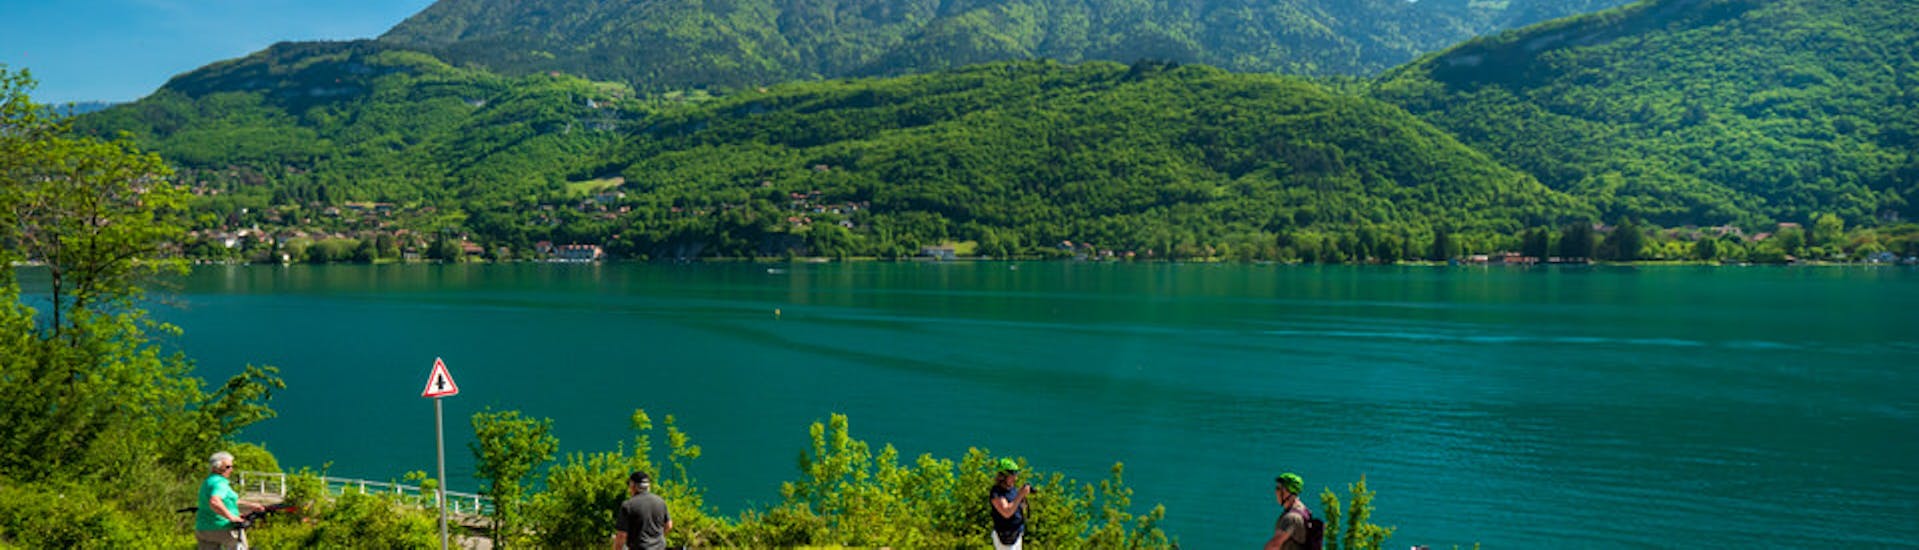 Vue du paysage durant la location de VAE autour du lac d'Annecy.